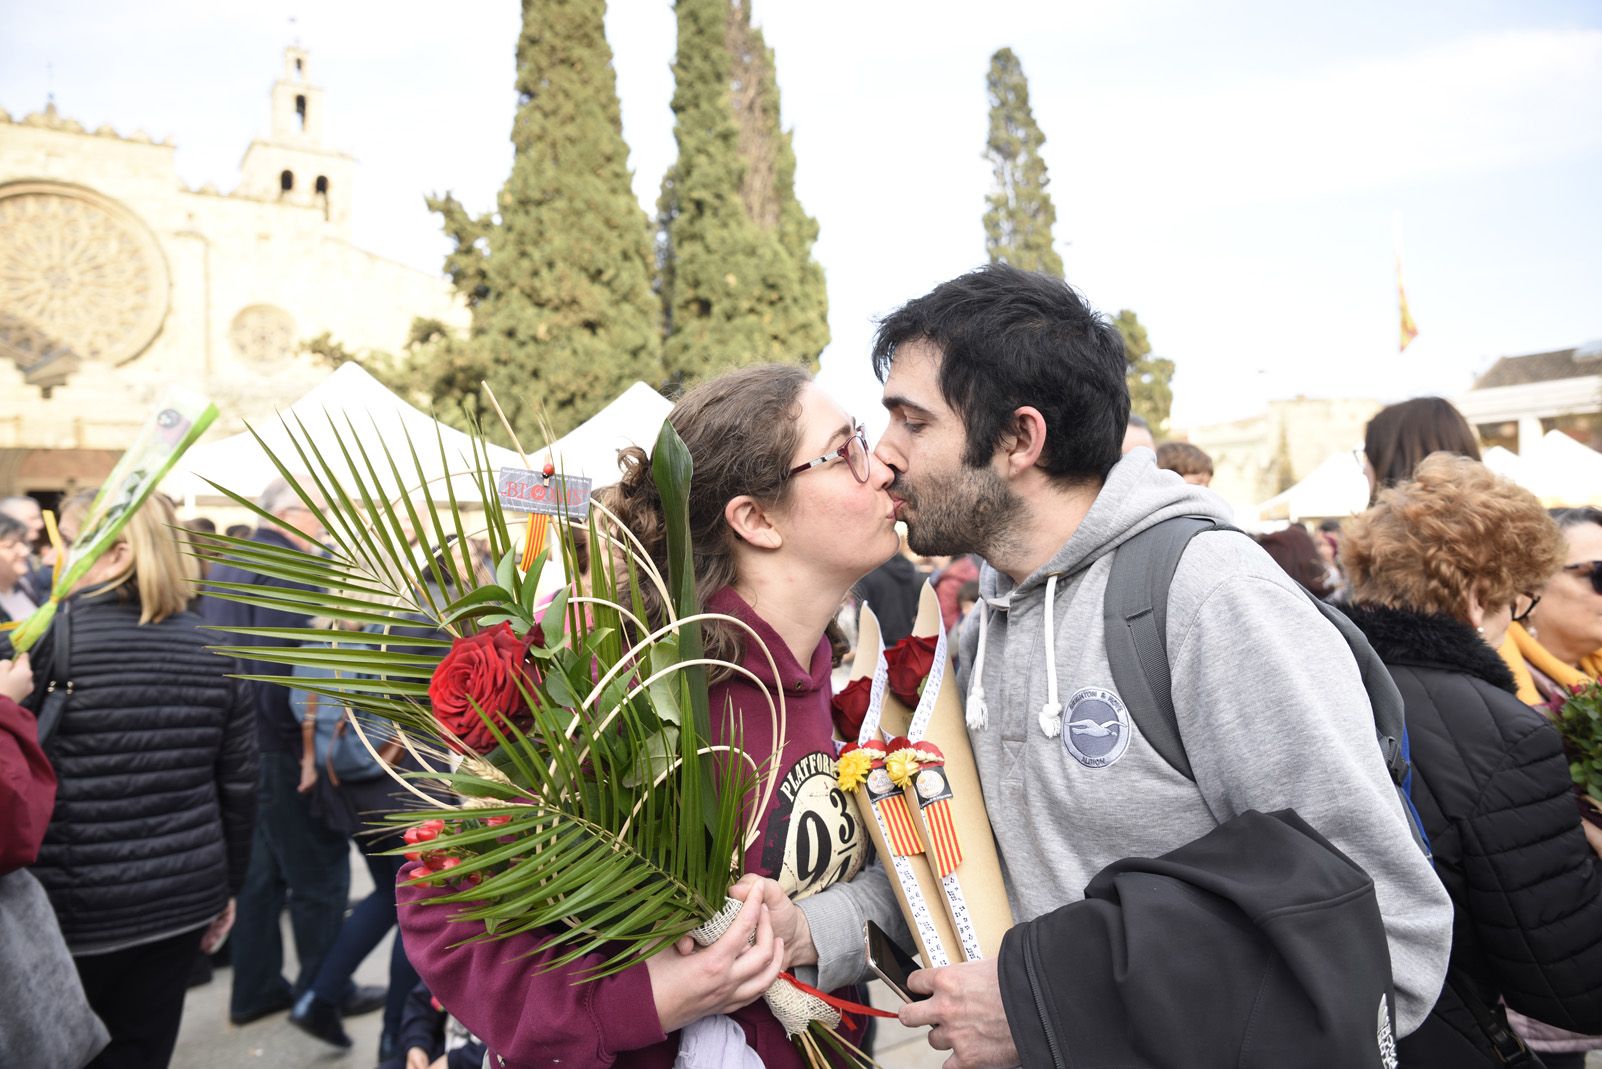 El petó dels enamorats de Sant Jordi. Foto: Bernat Millet.